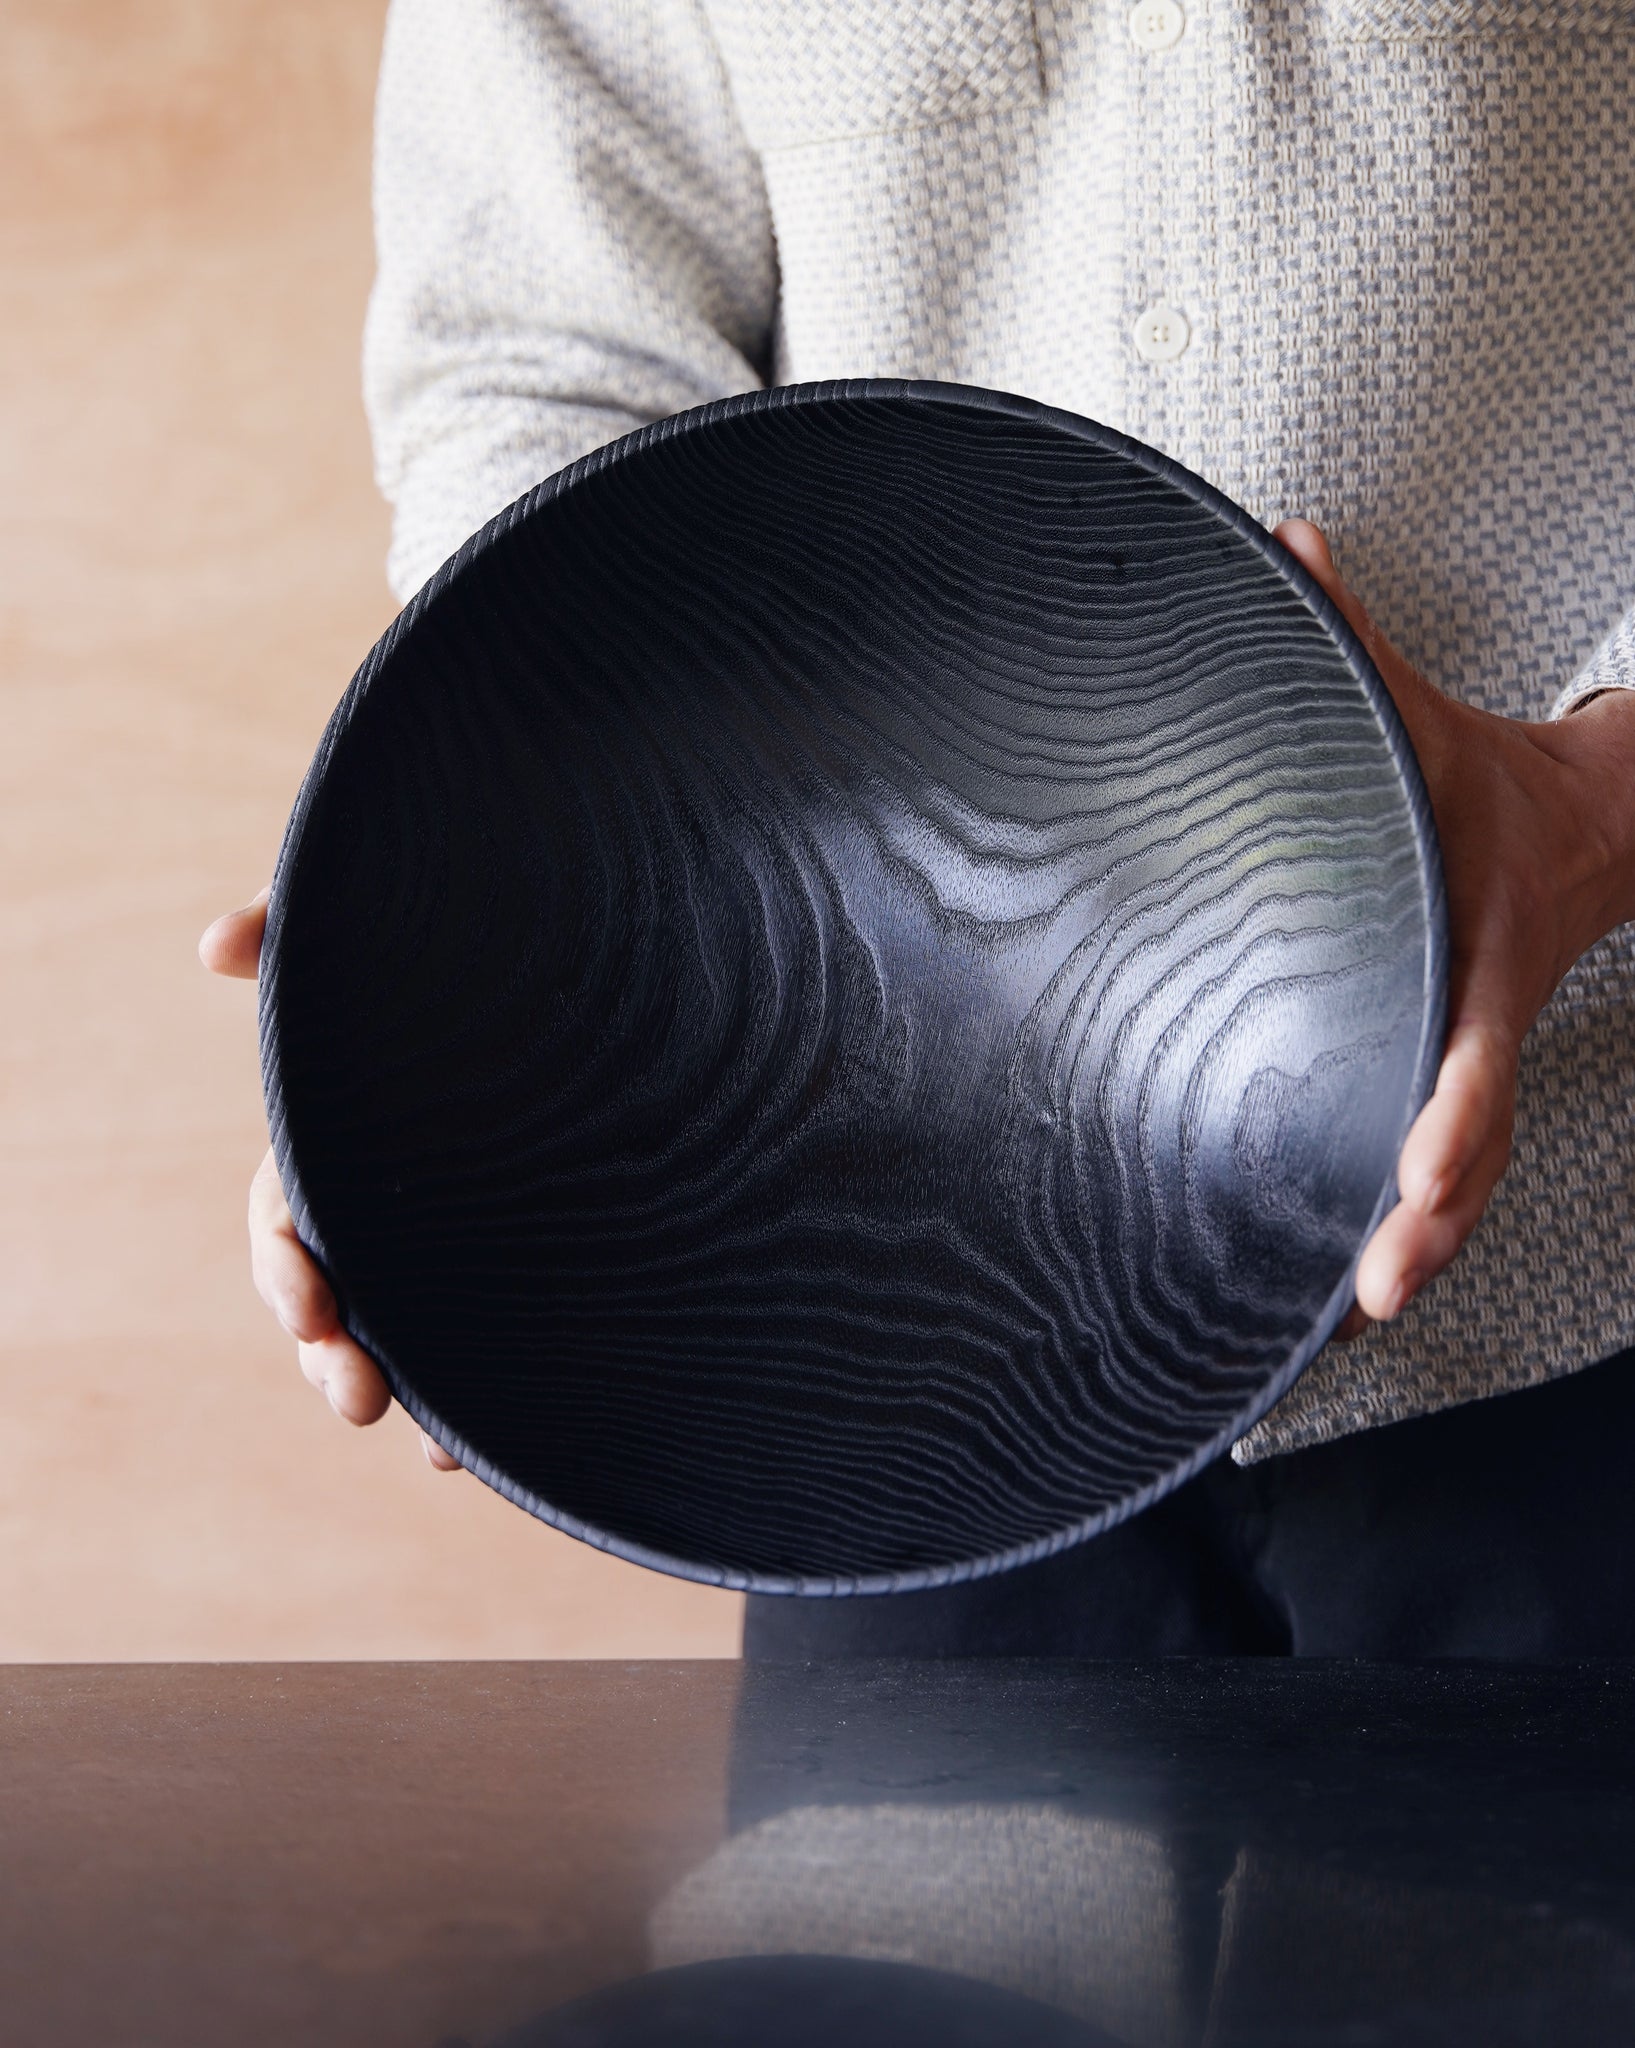 Waved Yakisugi Bowl - in Ash